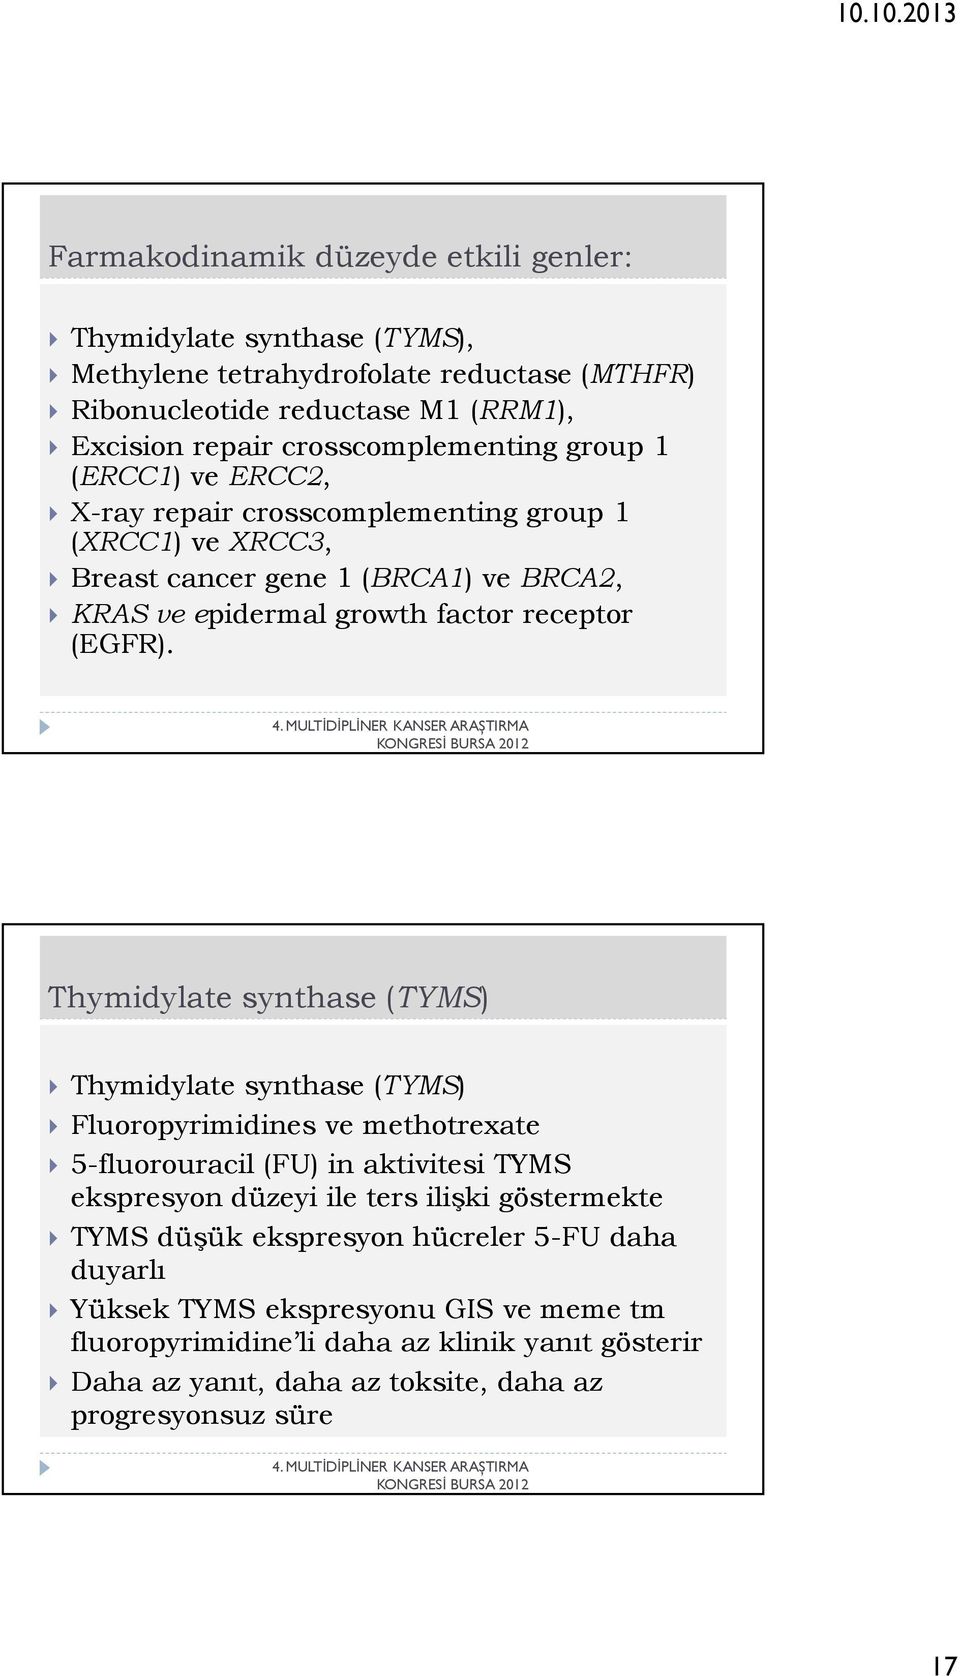 Thymidylate synthase (TYMS) Thymidylate synthase (TYMS) Fluoropyrimidines ve methotrexate 5-fluorouracil (FU) in aktivitesi TYMS ekspresyon düzeyi ile ters ilişki göstermekte TYMS